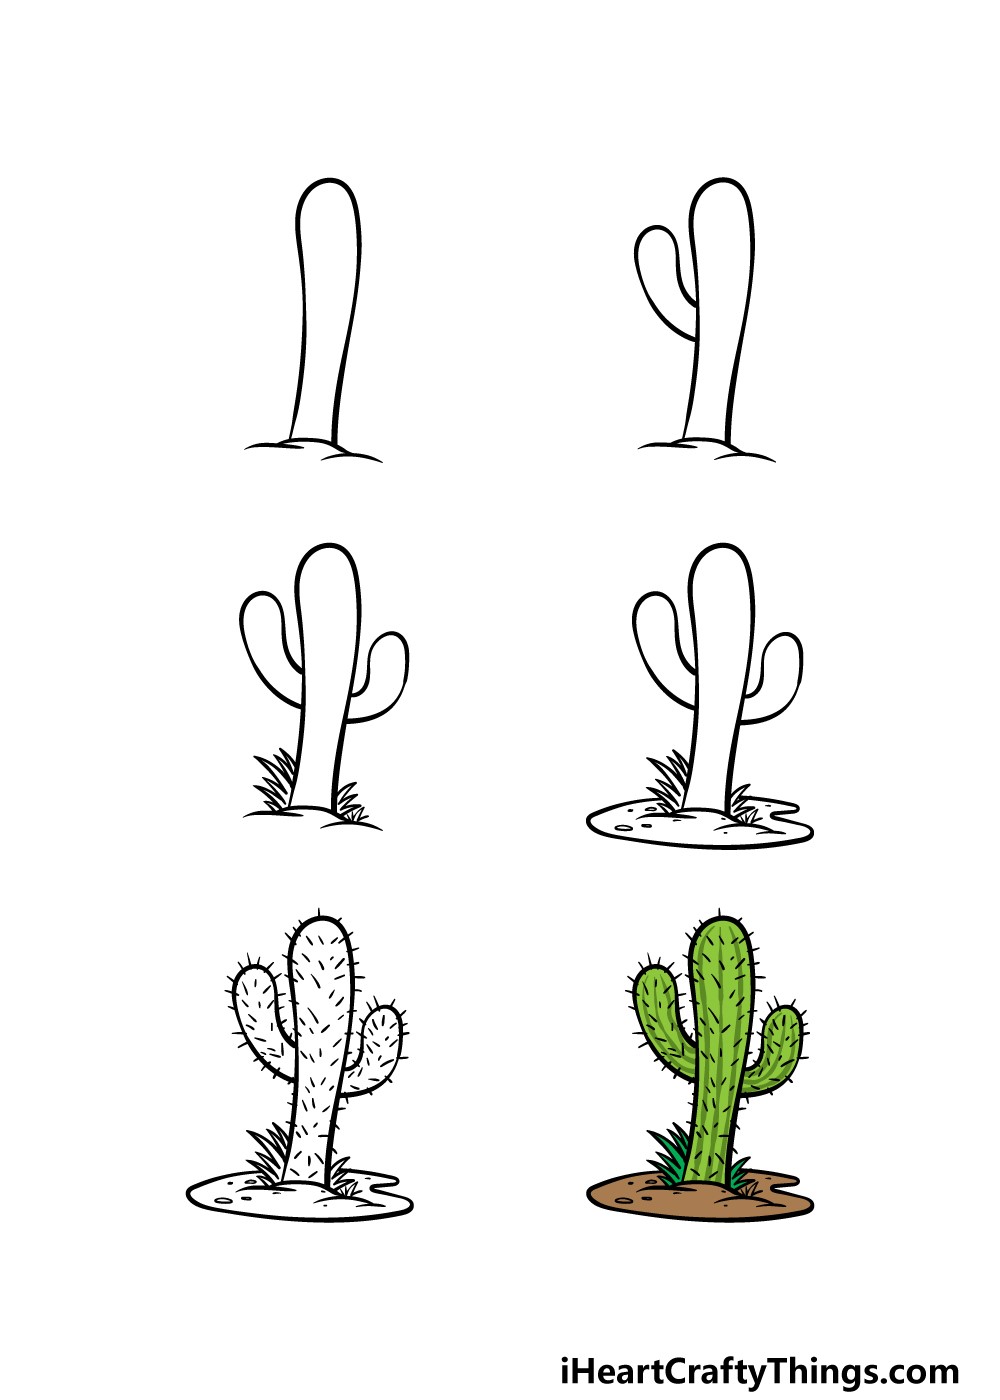 Idée de cactus 4 dessin